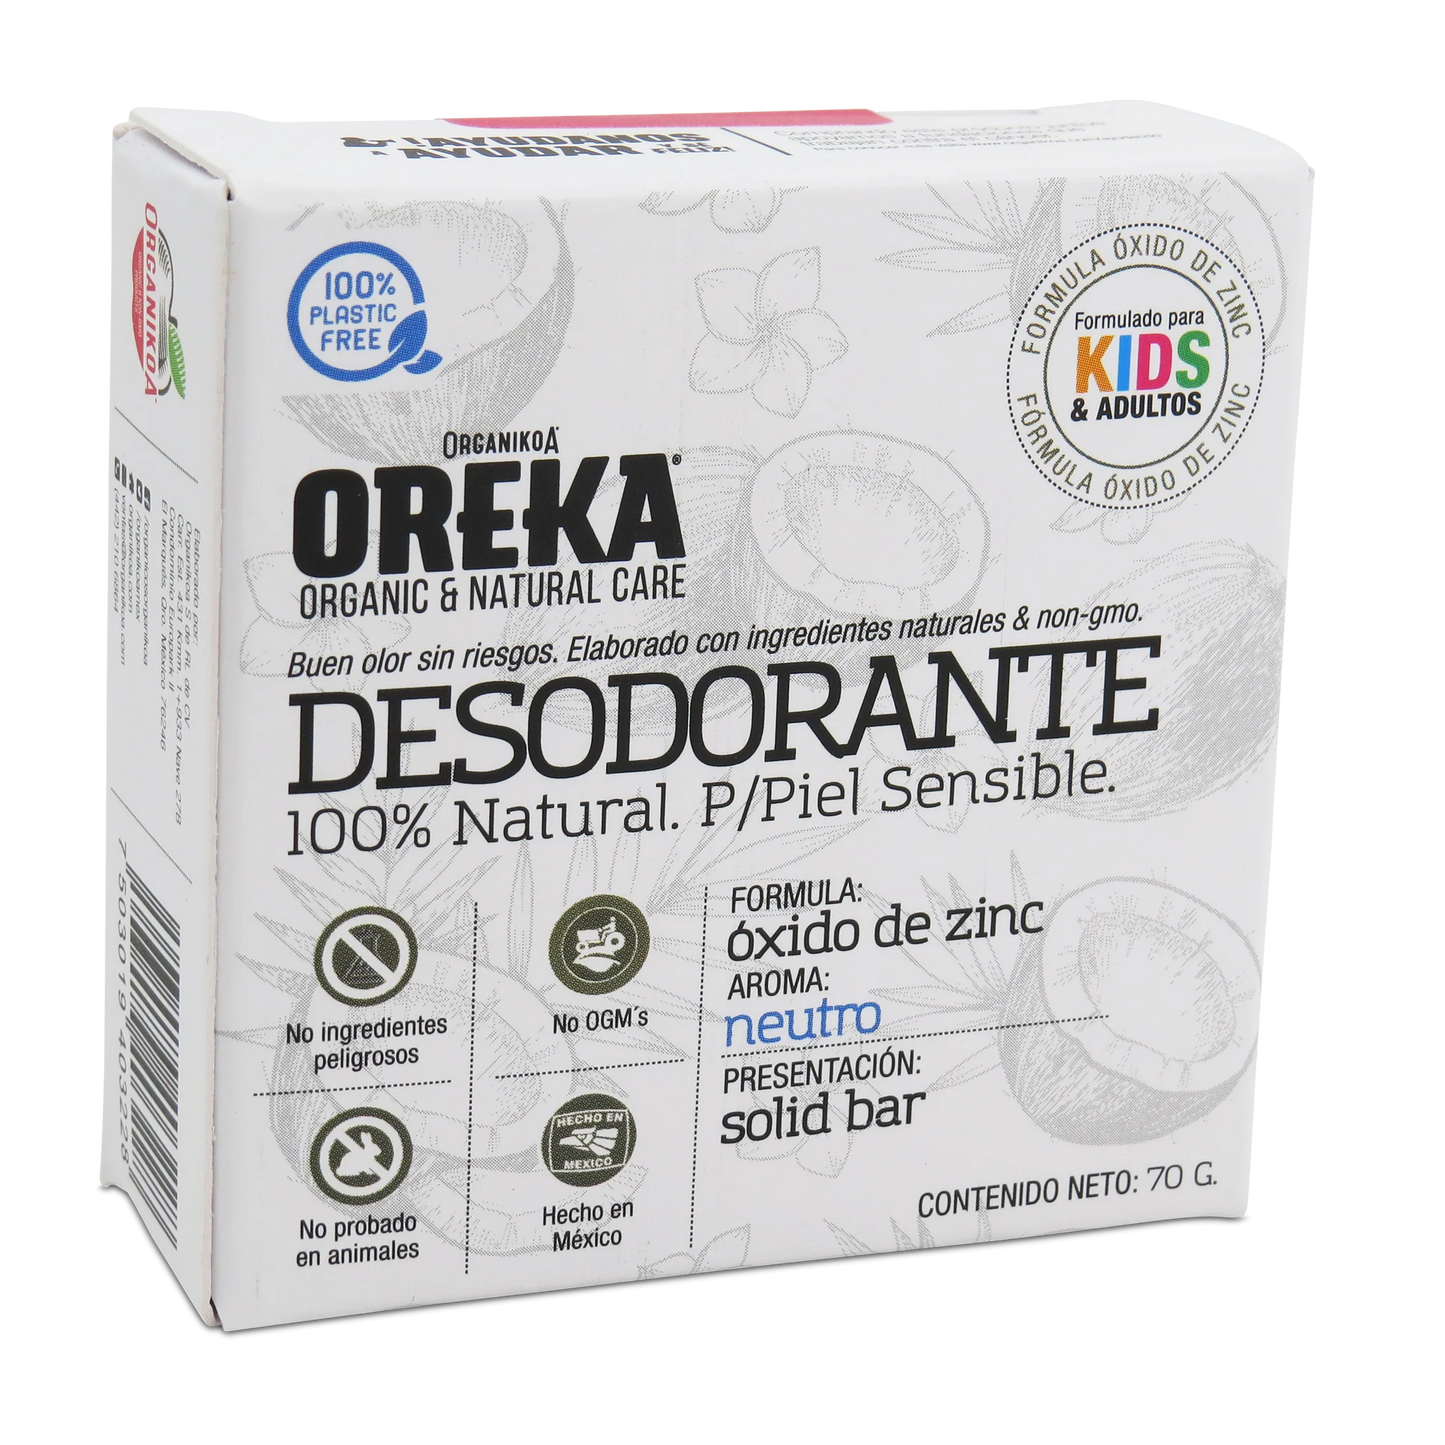 Desodorante 100% Natural Oxido de zinc neutro